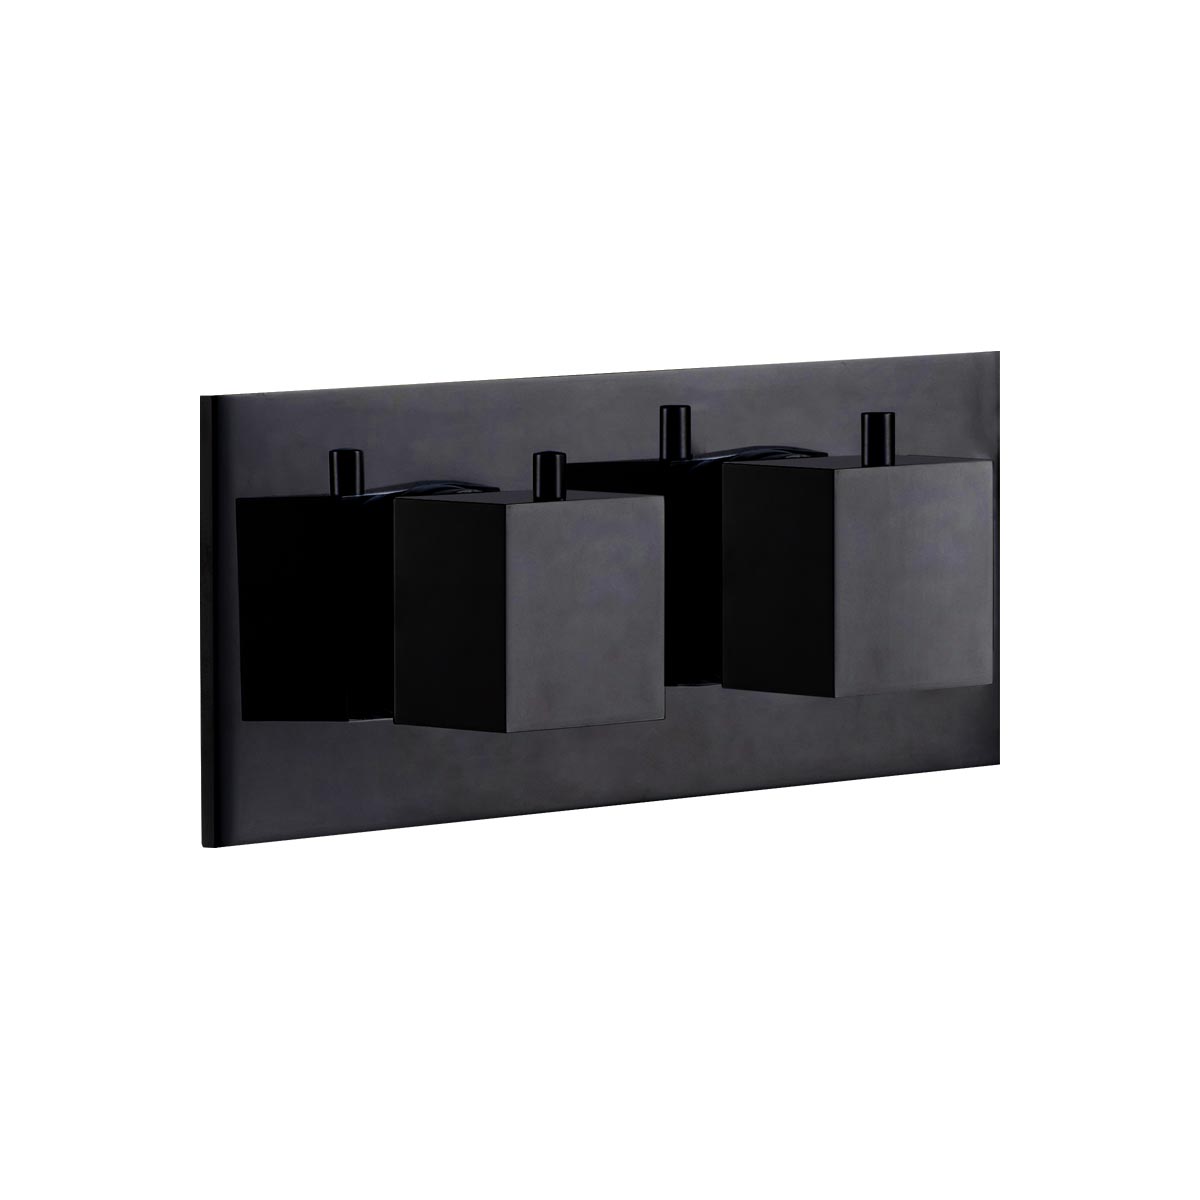 Rubinetto Quadro termostatico orizzontale - Nero opaco - Cropelli Shower, sistemi doccia di design per il tuo bagno